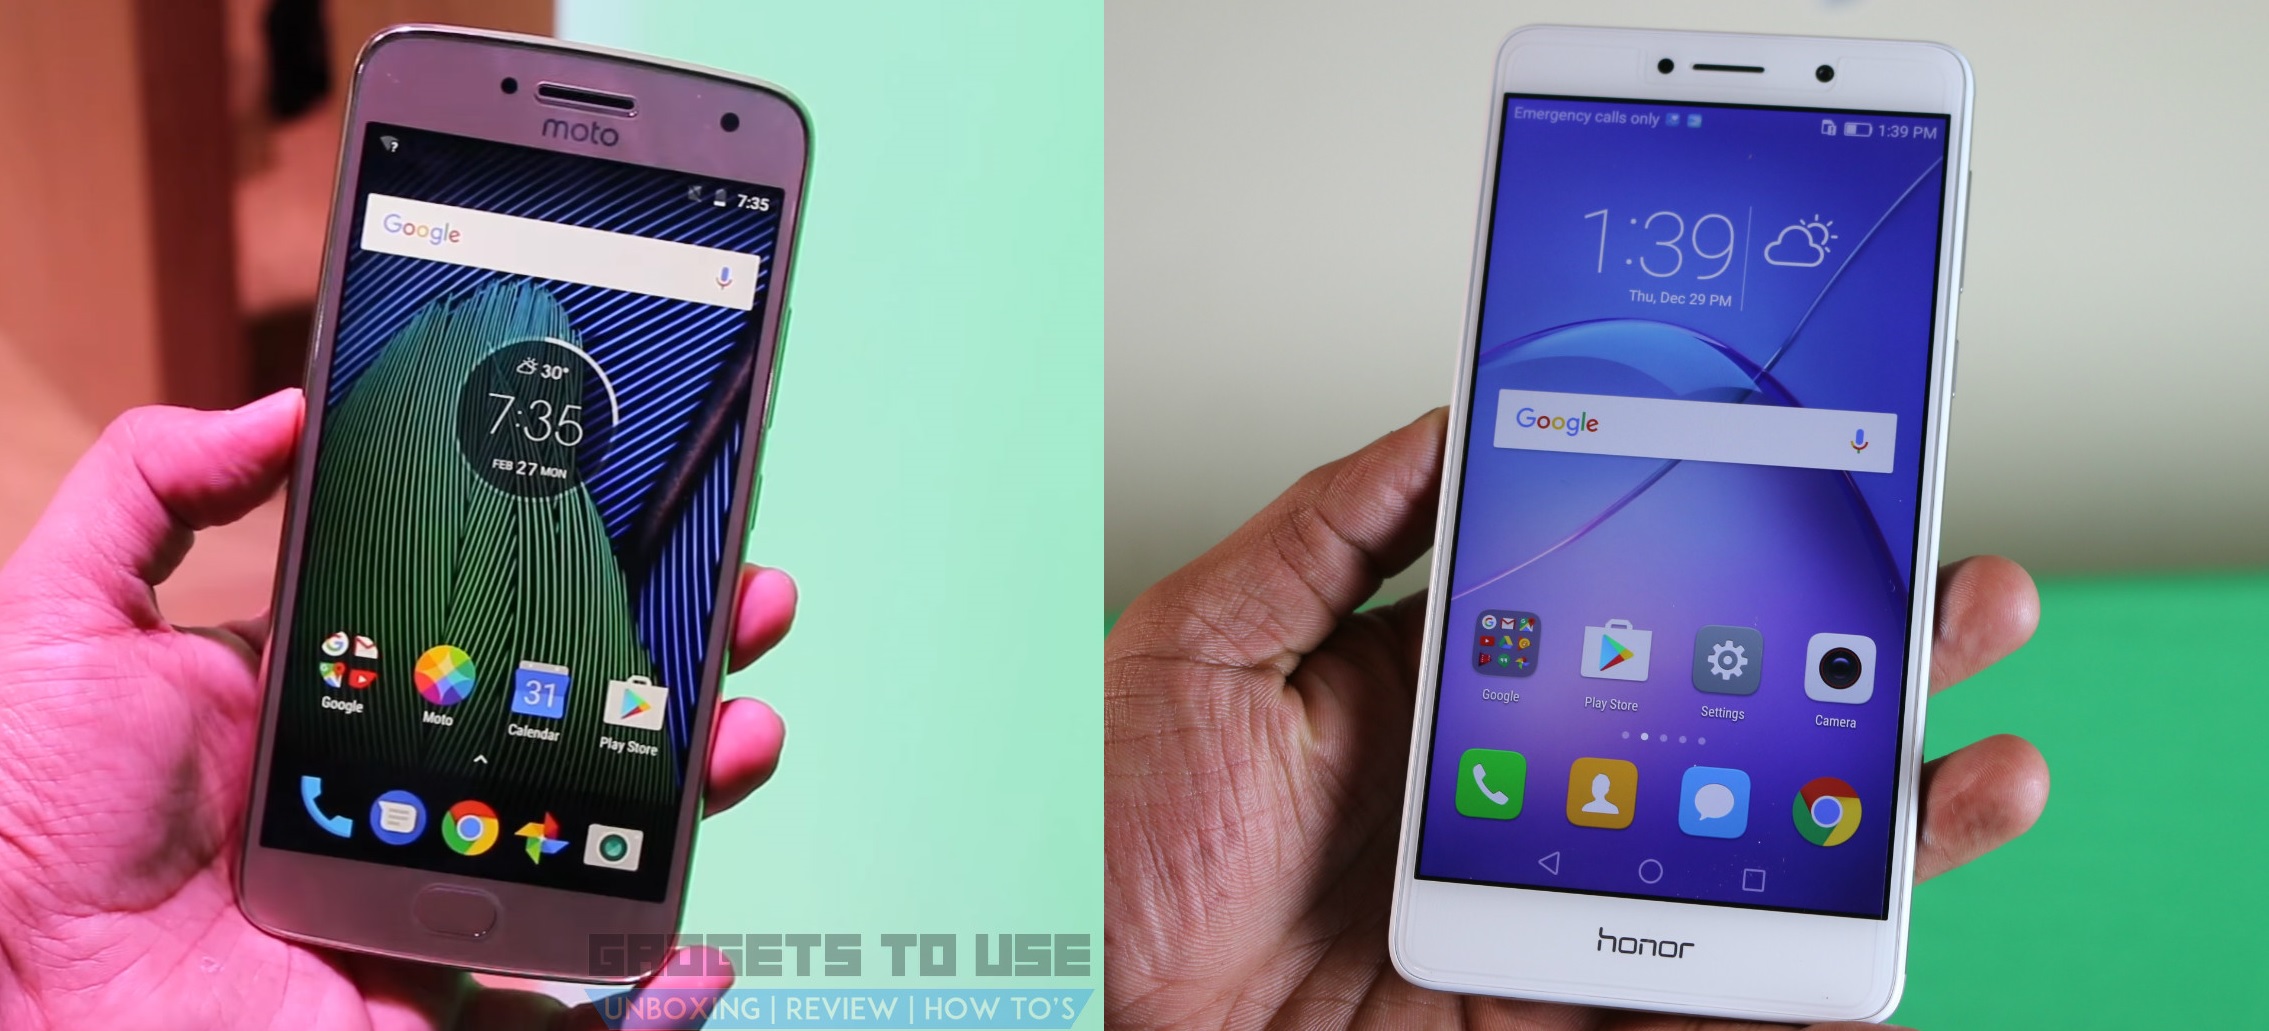 Motorola Moto G5 Plus vs Huawei Honor 6X Revisió de comparació ràpida